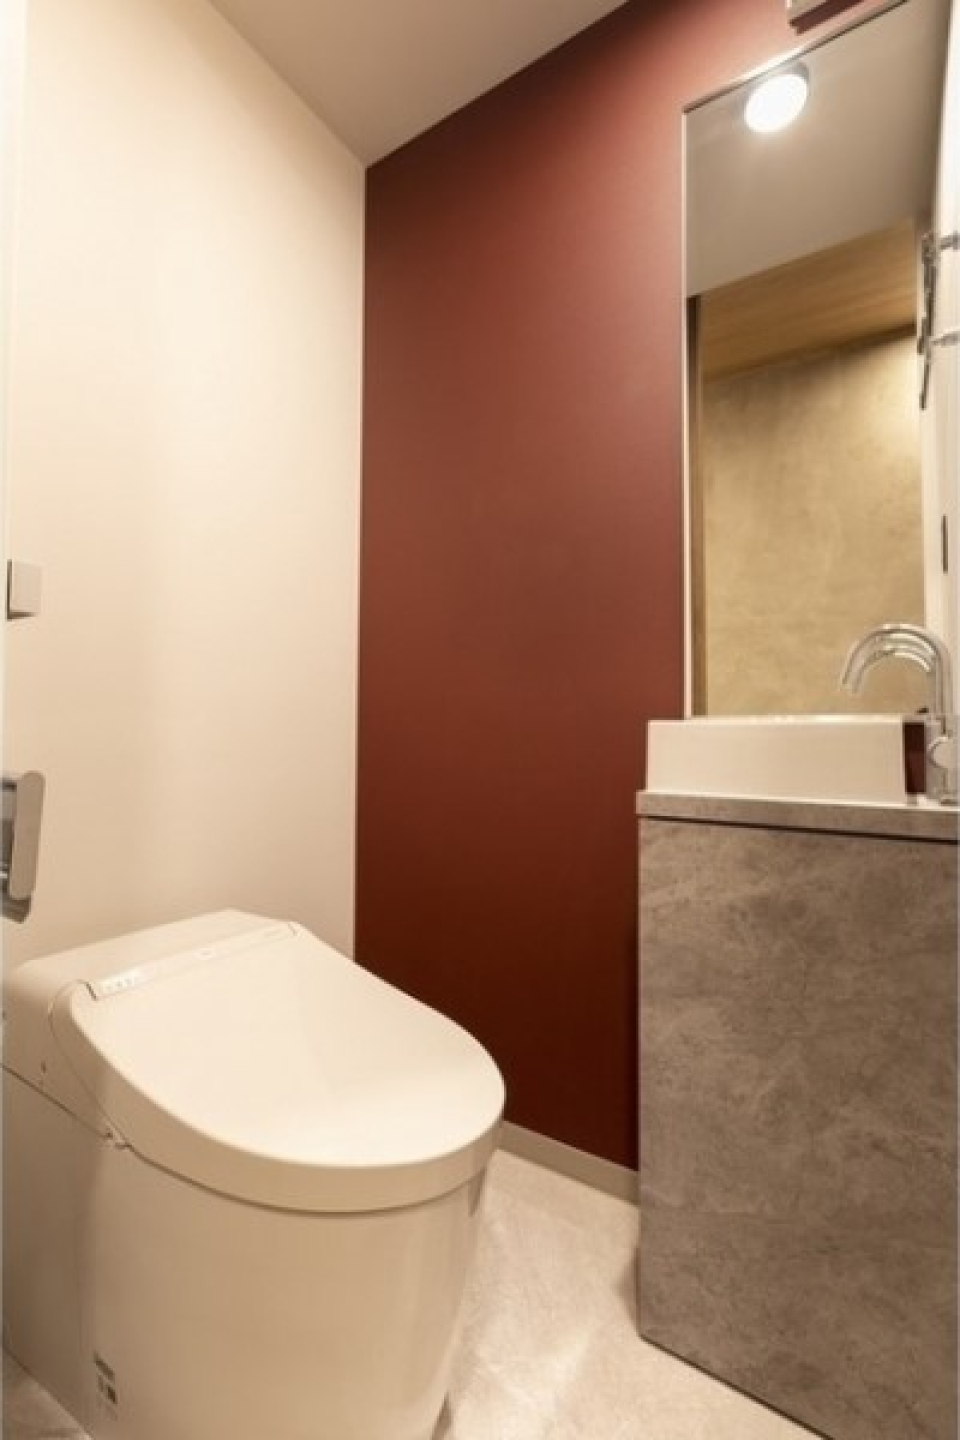 トイレの葡萄色の壁紙で世界観を保っています